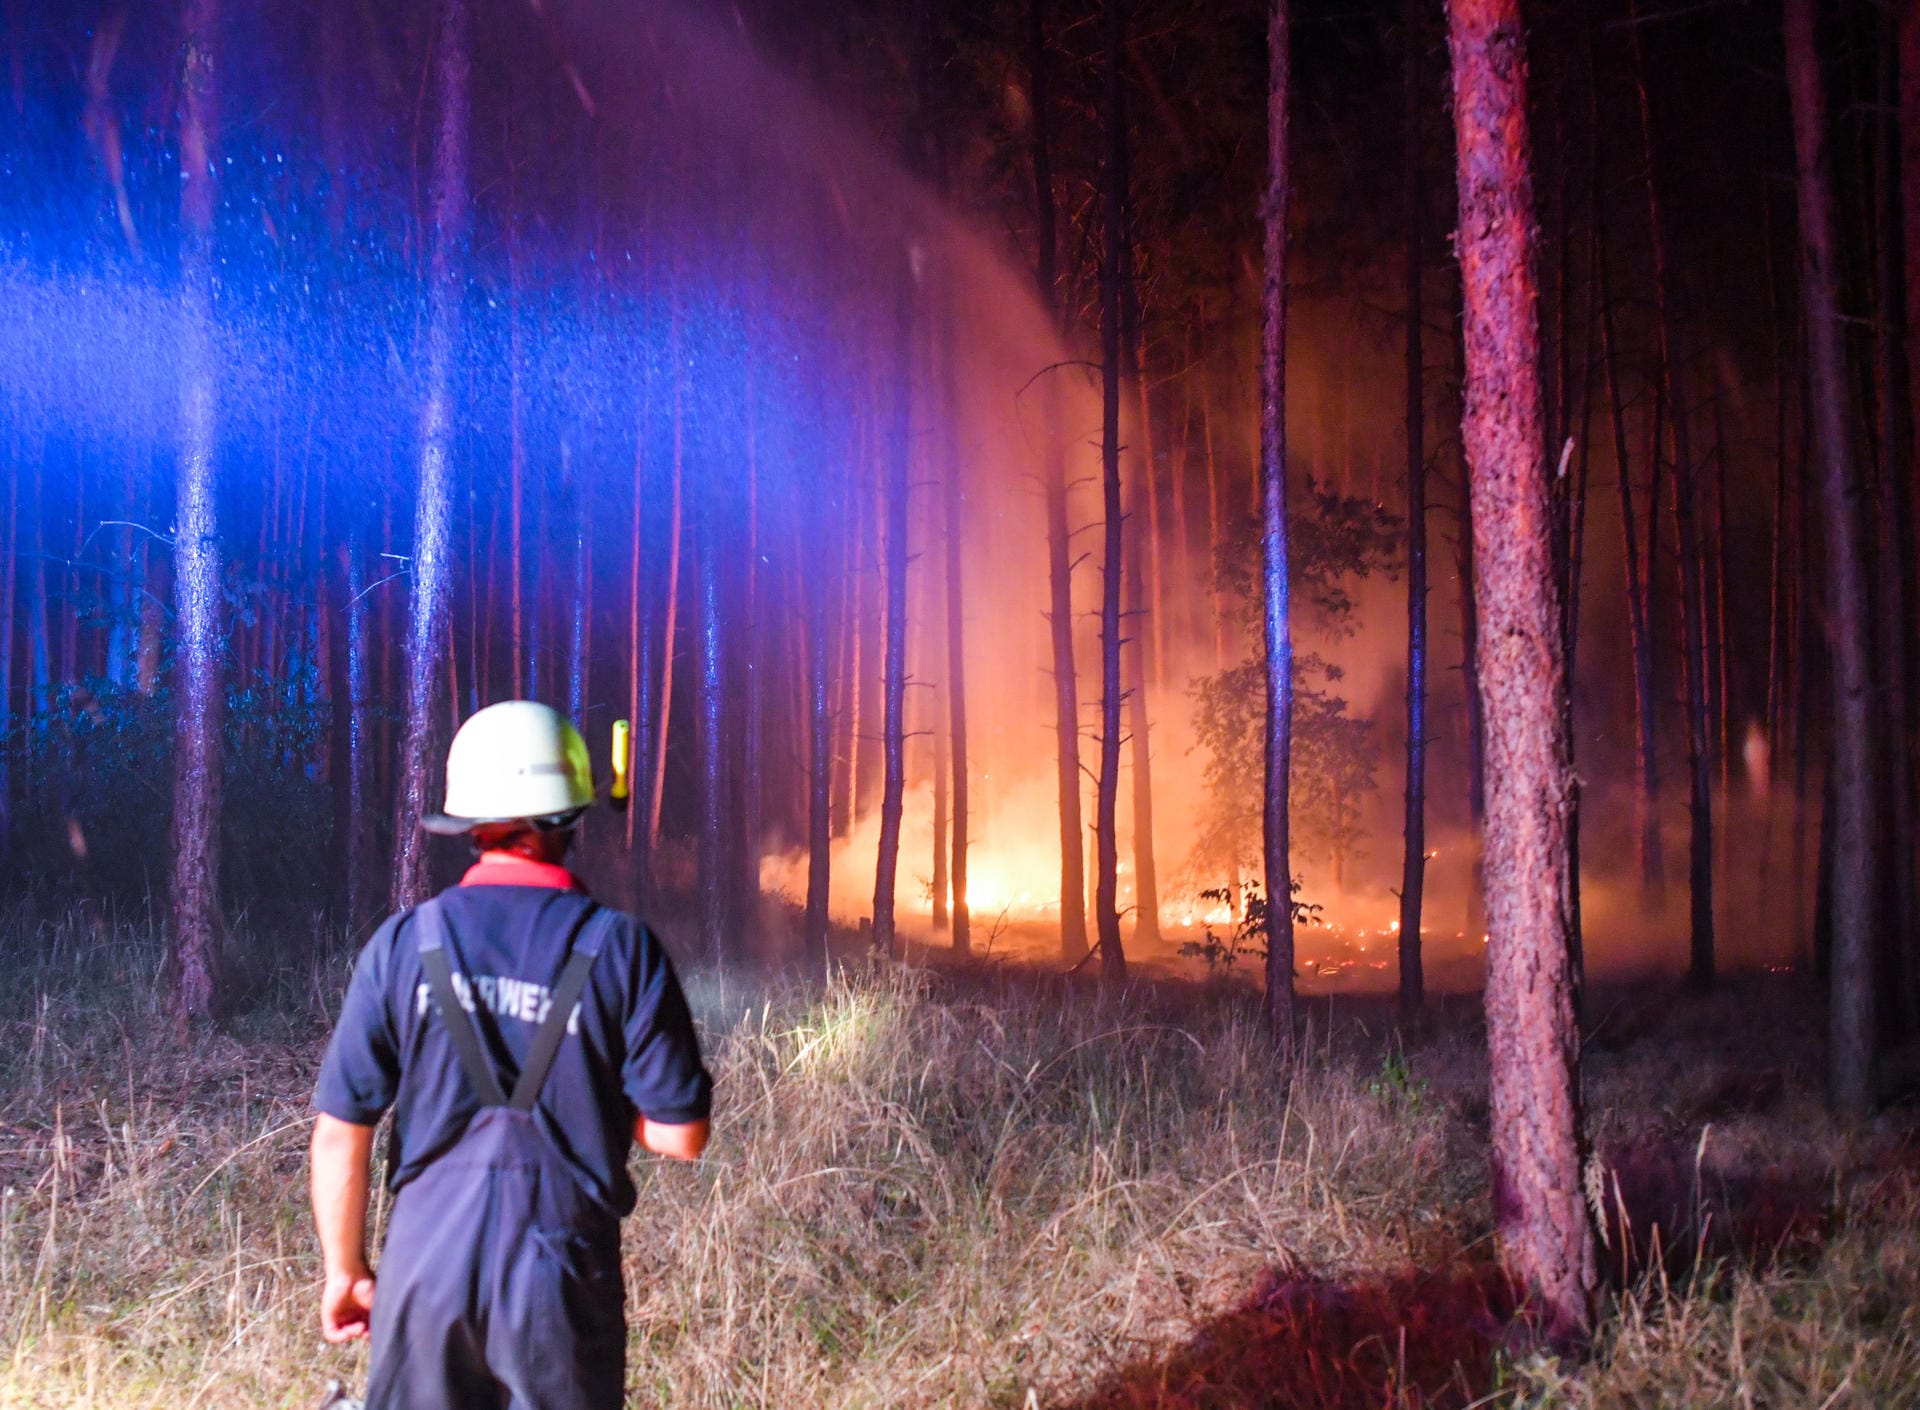 Hell erleuchtet ist ein brennender Wald nahe Klausdorf, der gerade versucht wird, mit einem Wasserstrahl aus einem Fahrzeuges der Feuerwehr zu löschen.